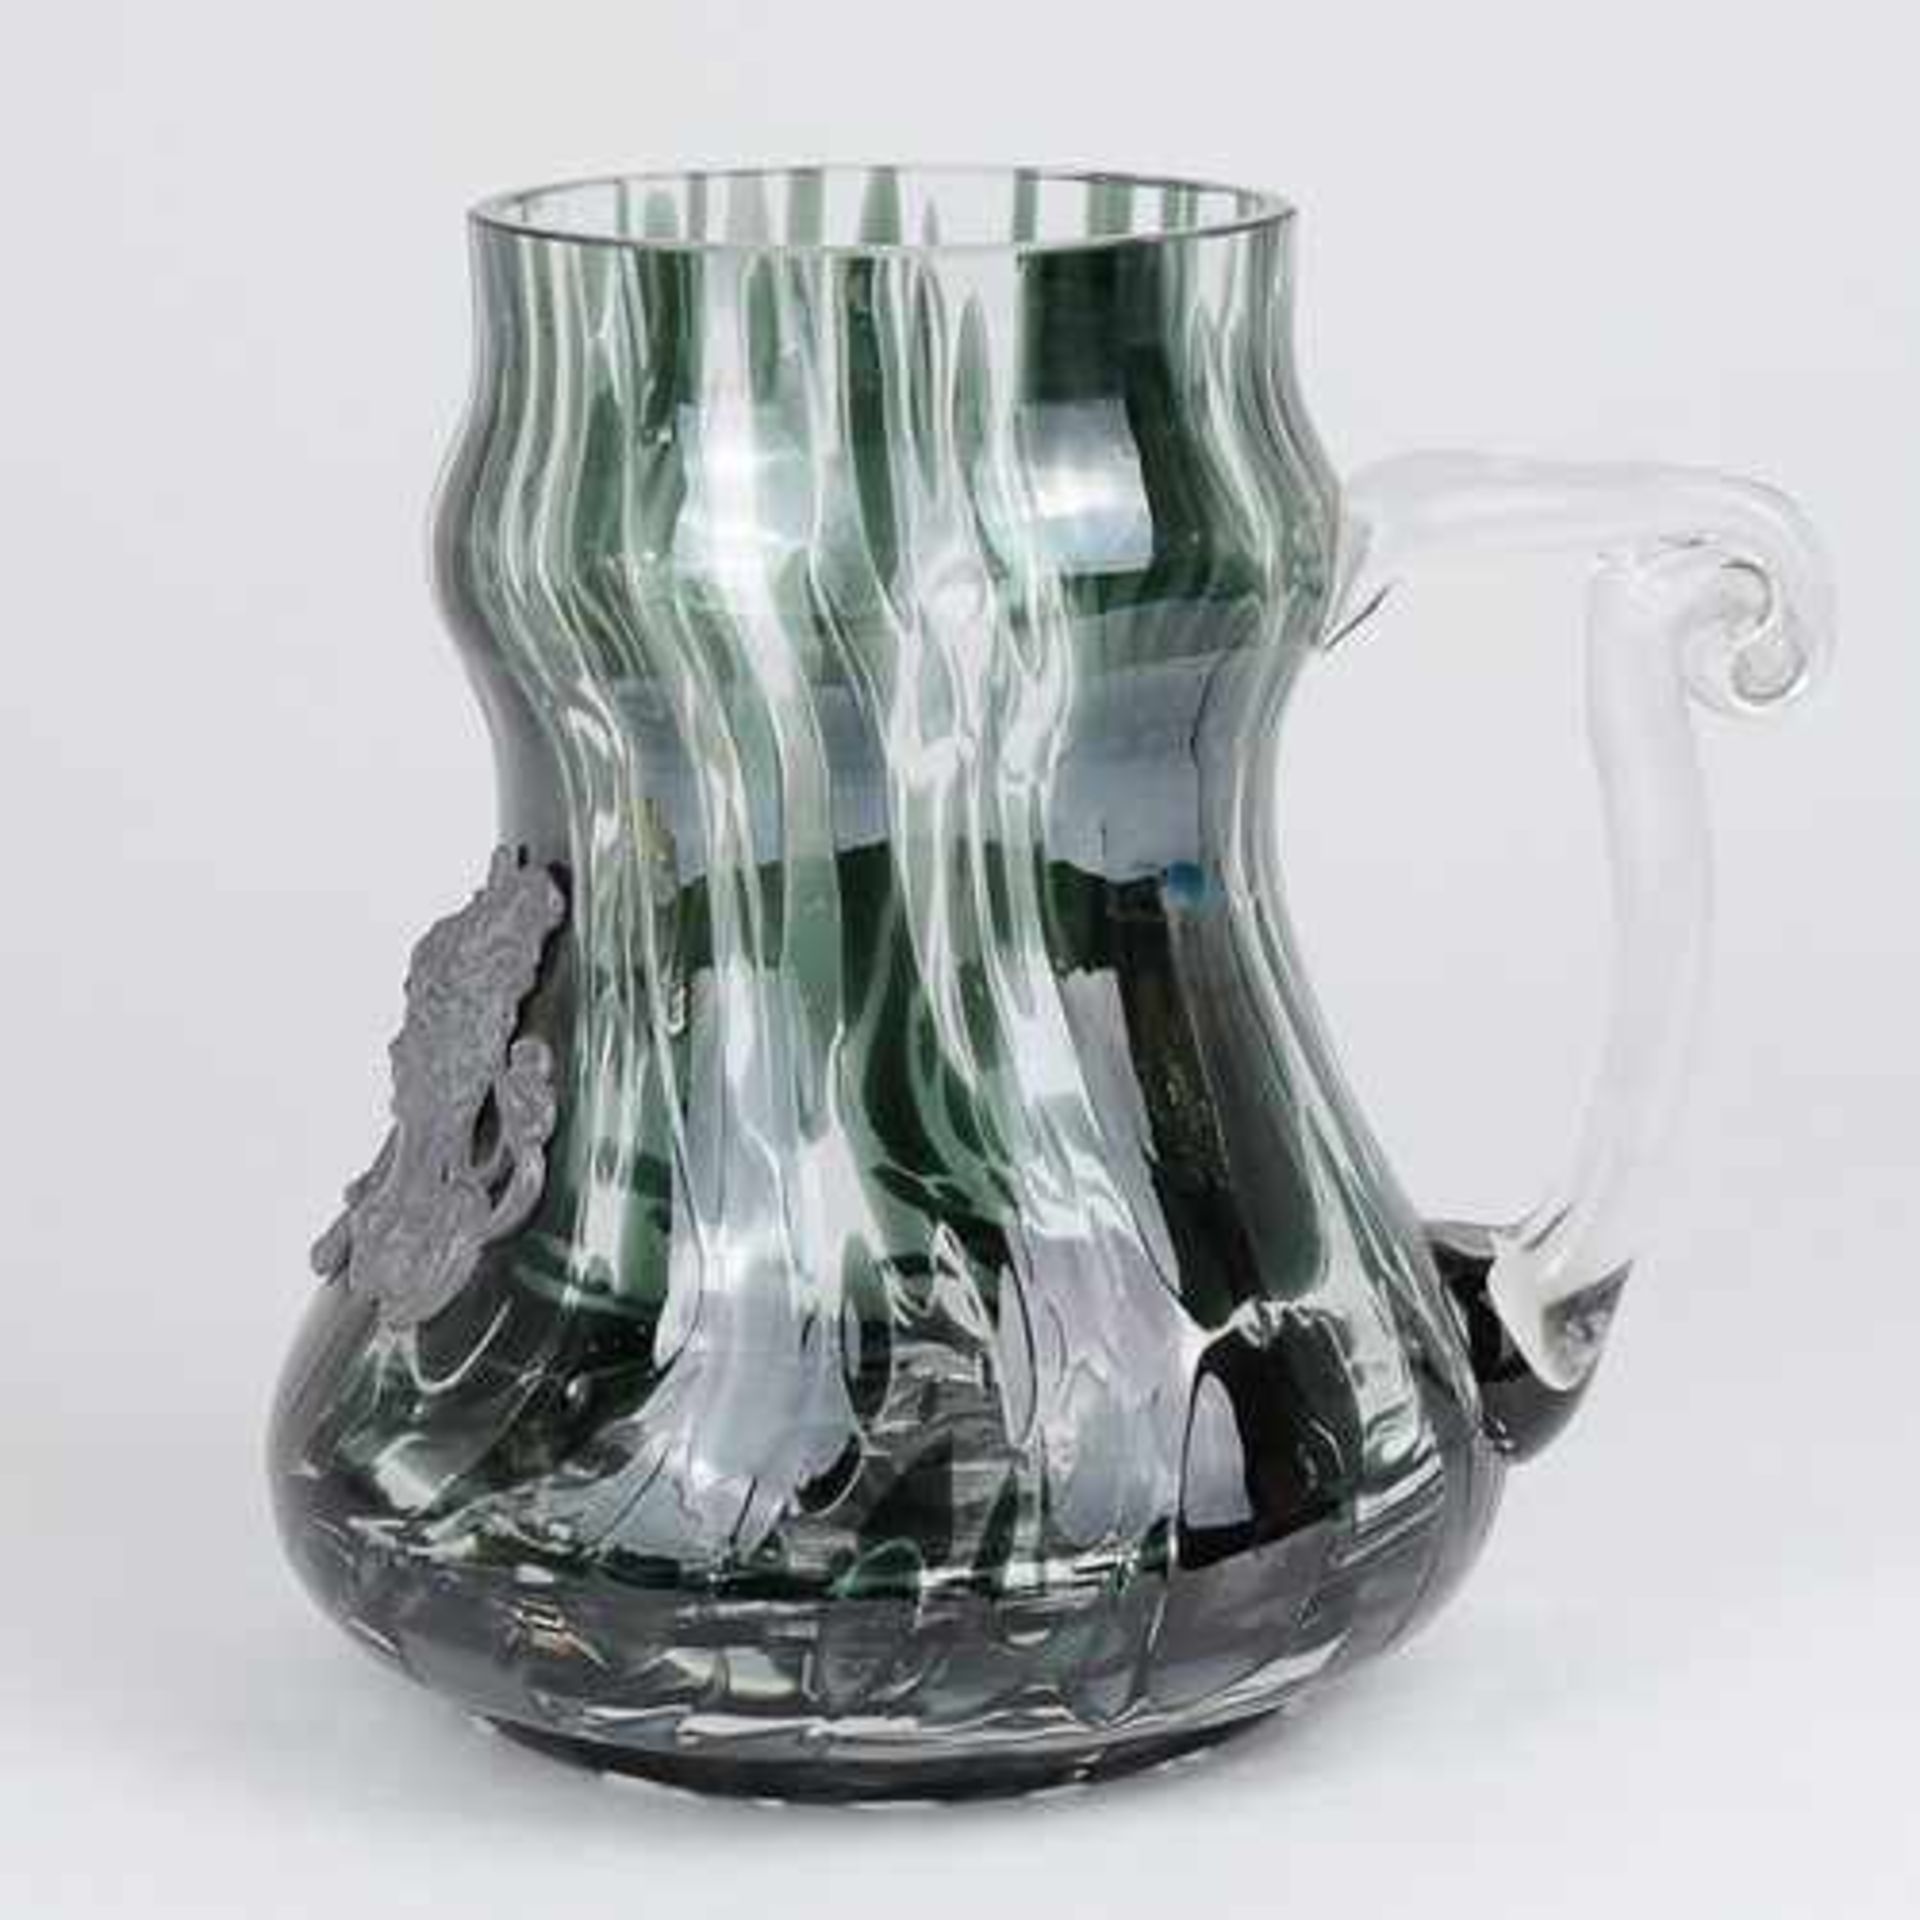 Konvolut 5 St., Vasen, Krug u. Zierobjekt, untersch. Formen u. Größen, farbloses Glas, part. braun - Image 4 of 4